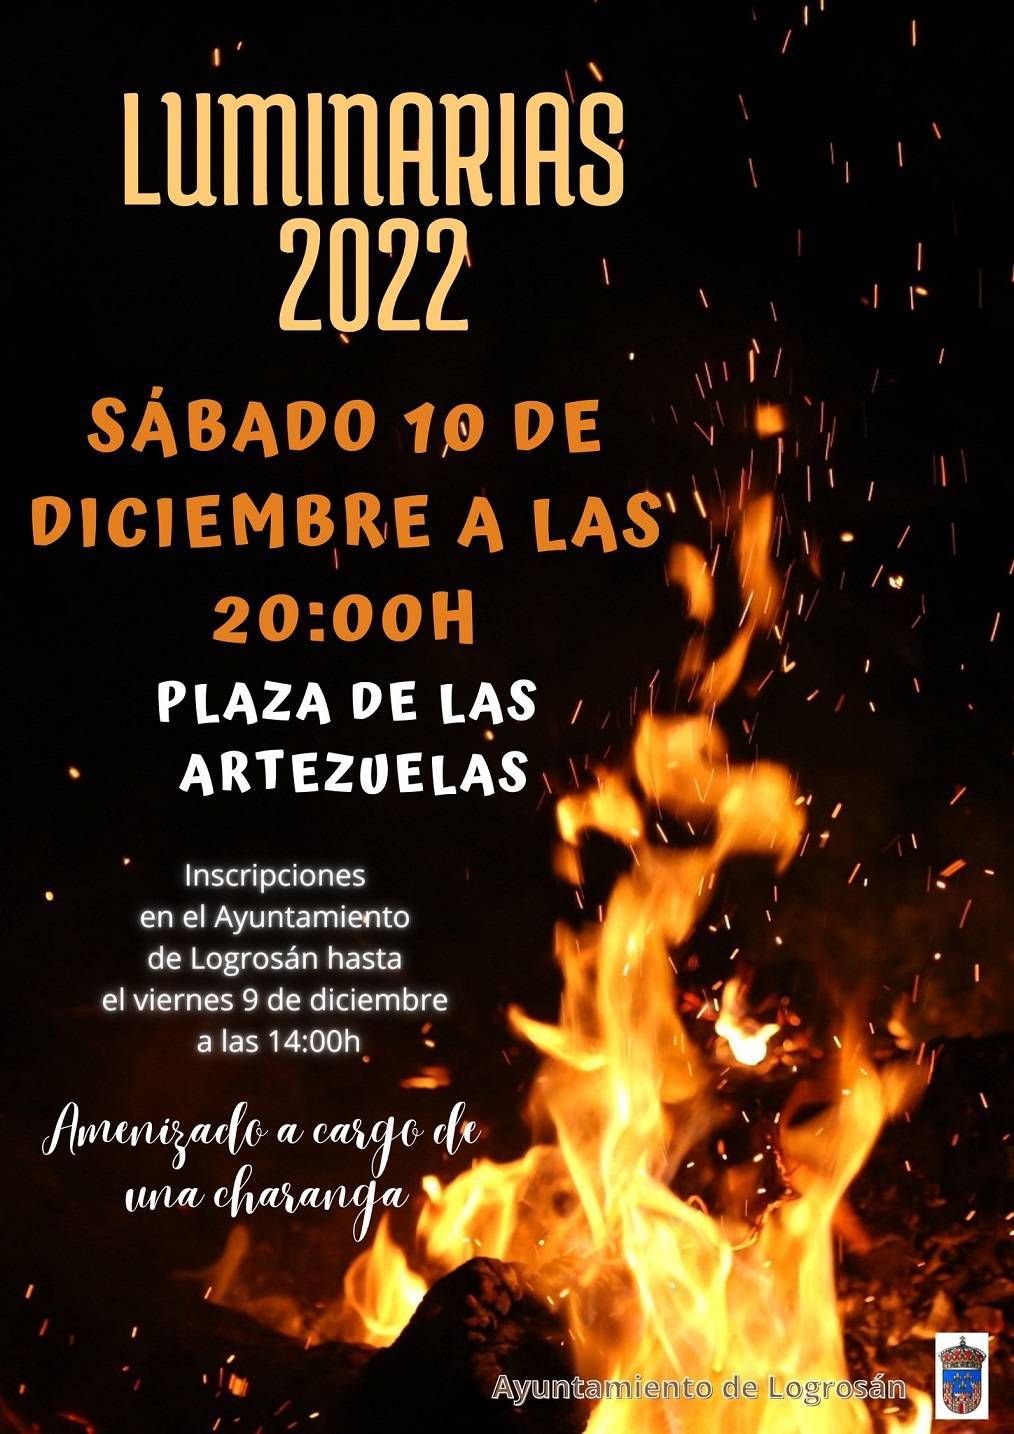 Luminarias (2022) - Logrosán (Cáceres)